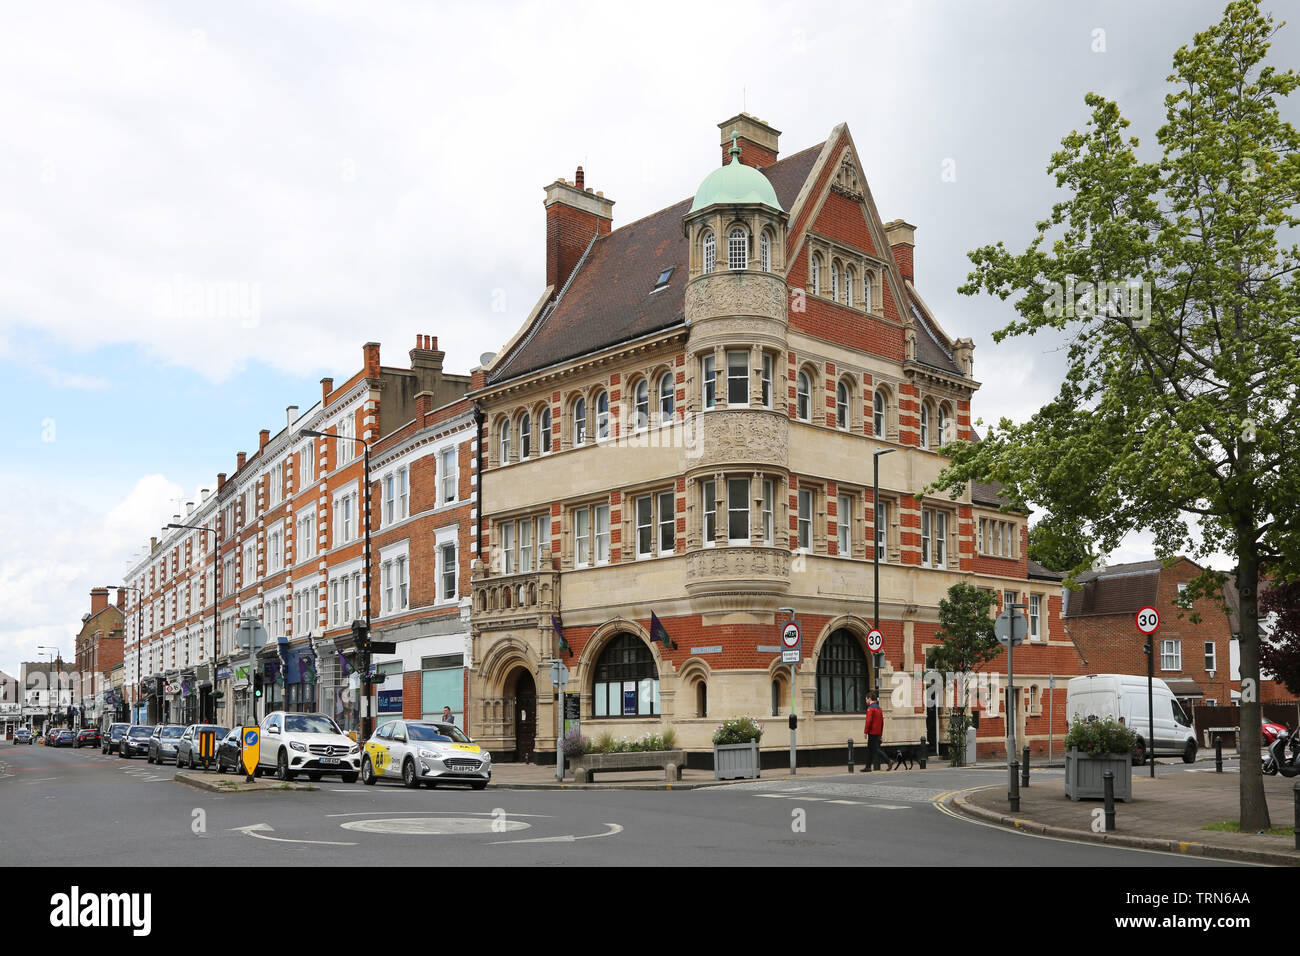 Wimbledon Village, un riche domaine du sud-ouest de Londres, Royaume-Uni. Montre ornate ancienne banque et commerces ; jonction de High Street et Belvedere Road. Banque D'Images